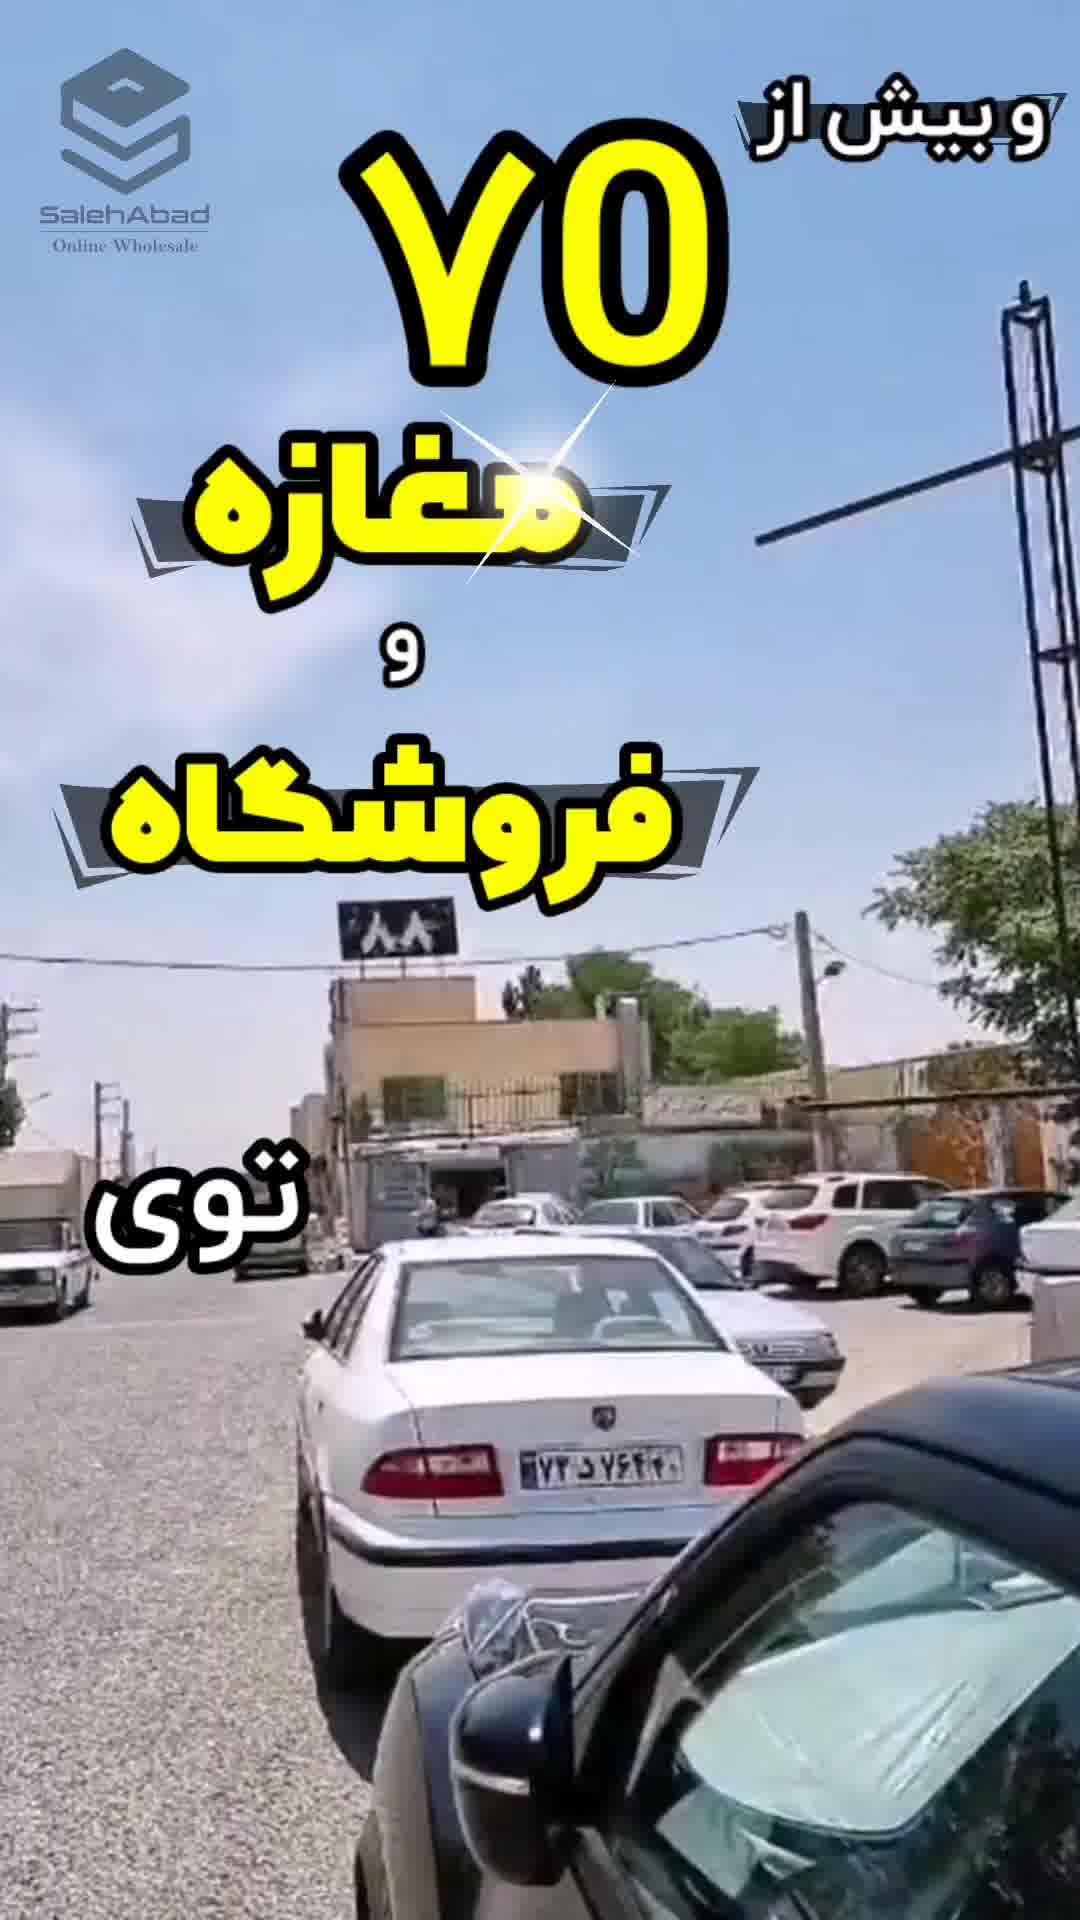 معرفی انبار ۸۸ - بازار صالح آباد تهران